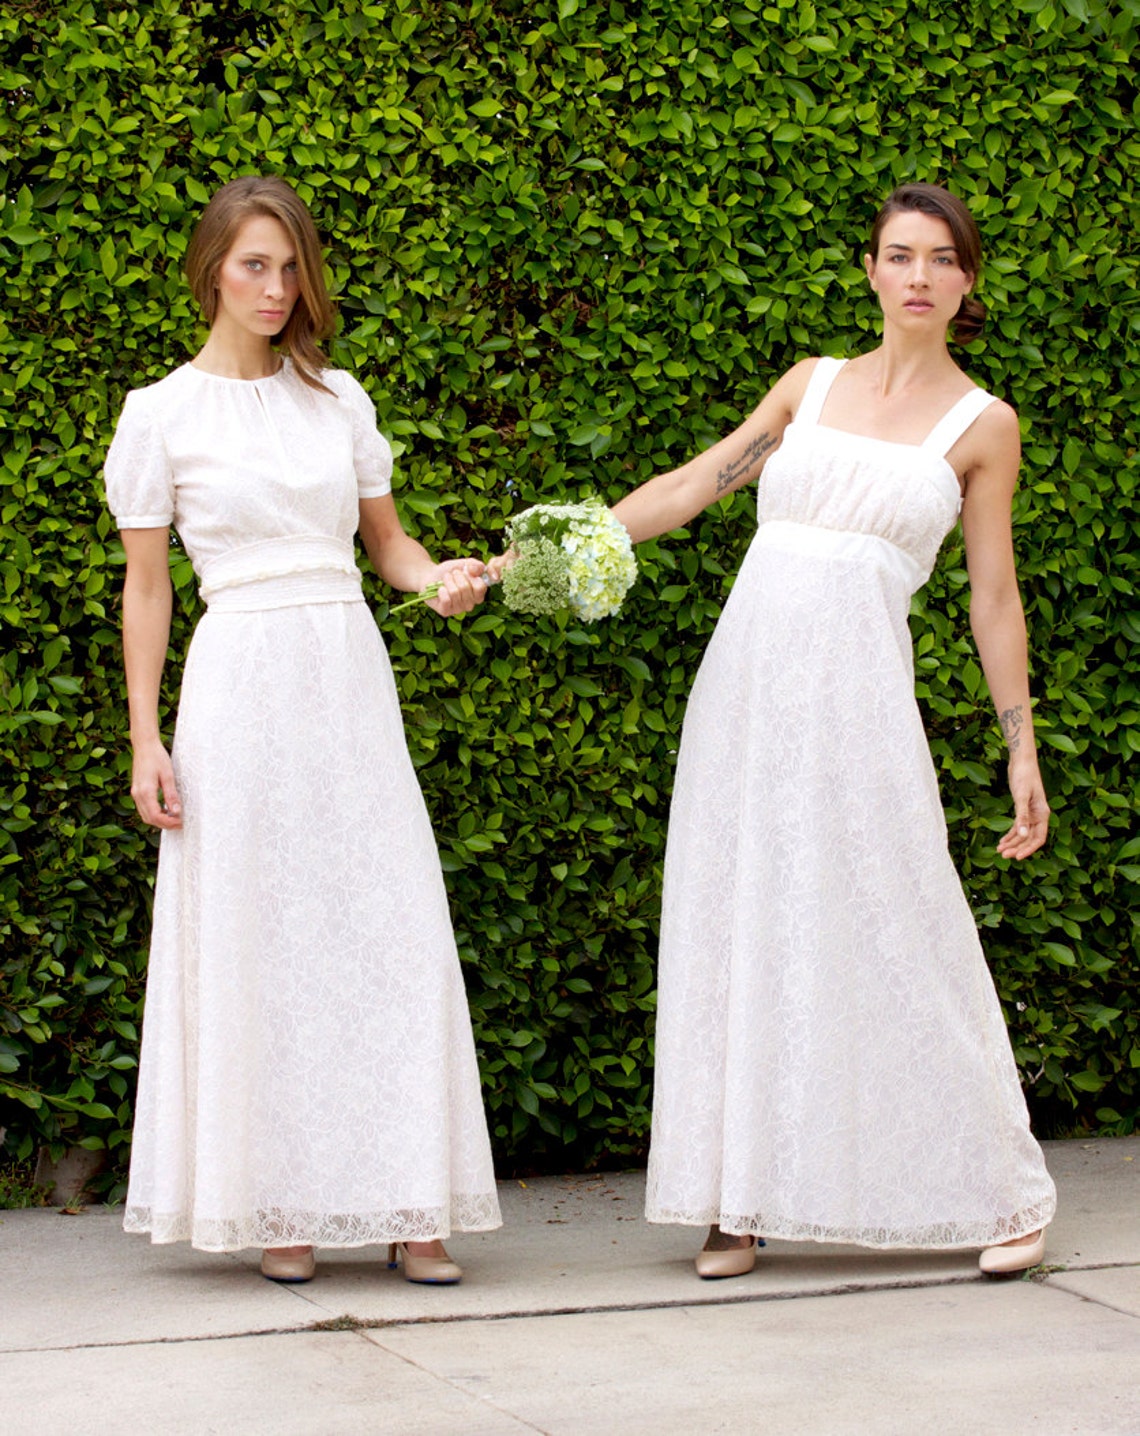 Short Sleeve Wedding Dress Lace Wedding Dress with Sleeves | Etsy